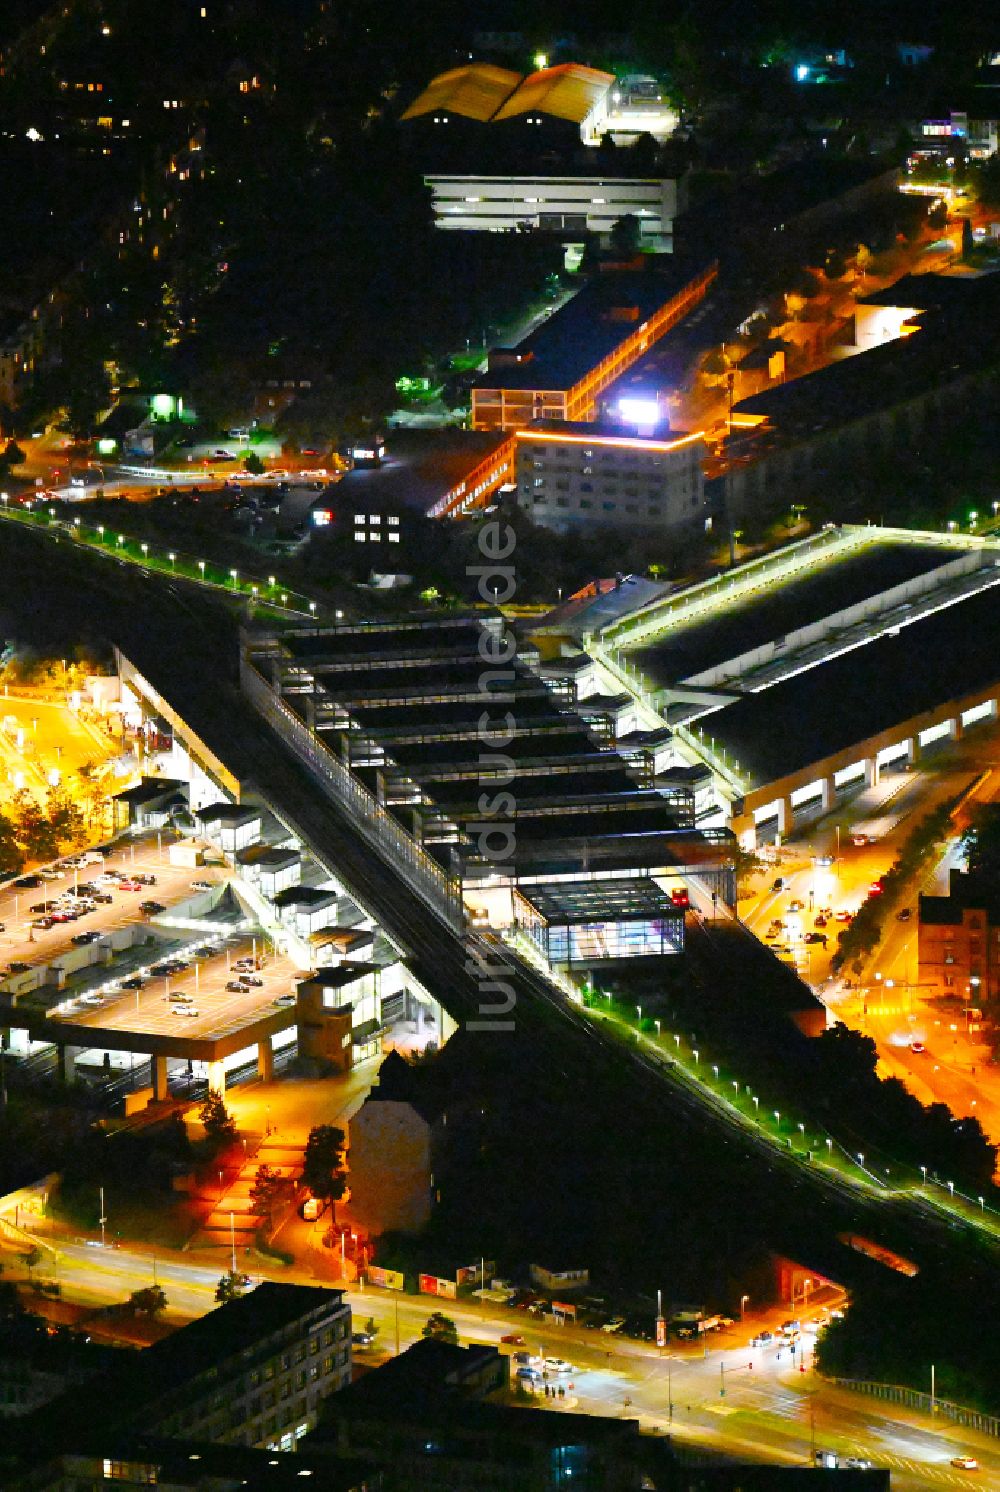 Nachtluftbild Berlin - Nachtluftbild Bahnhofsgebäude und Gleisanlagen des S-Bahnhofes Berlin Südkreuz im Ortsteil Tempelhof in Berlin, Deutschland